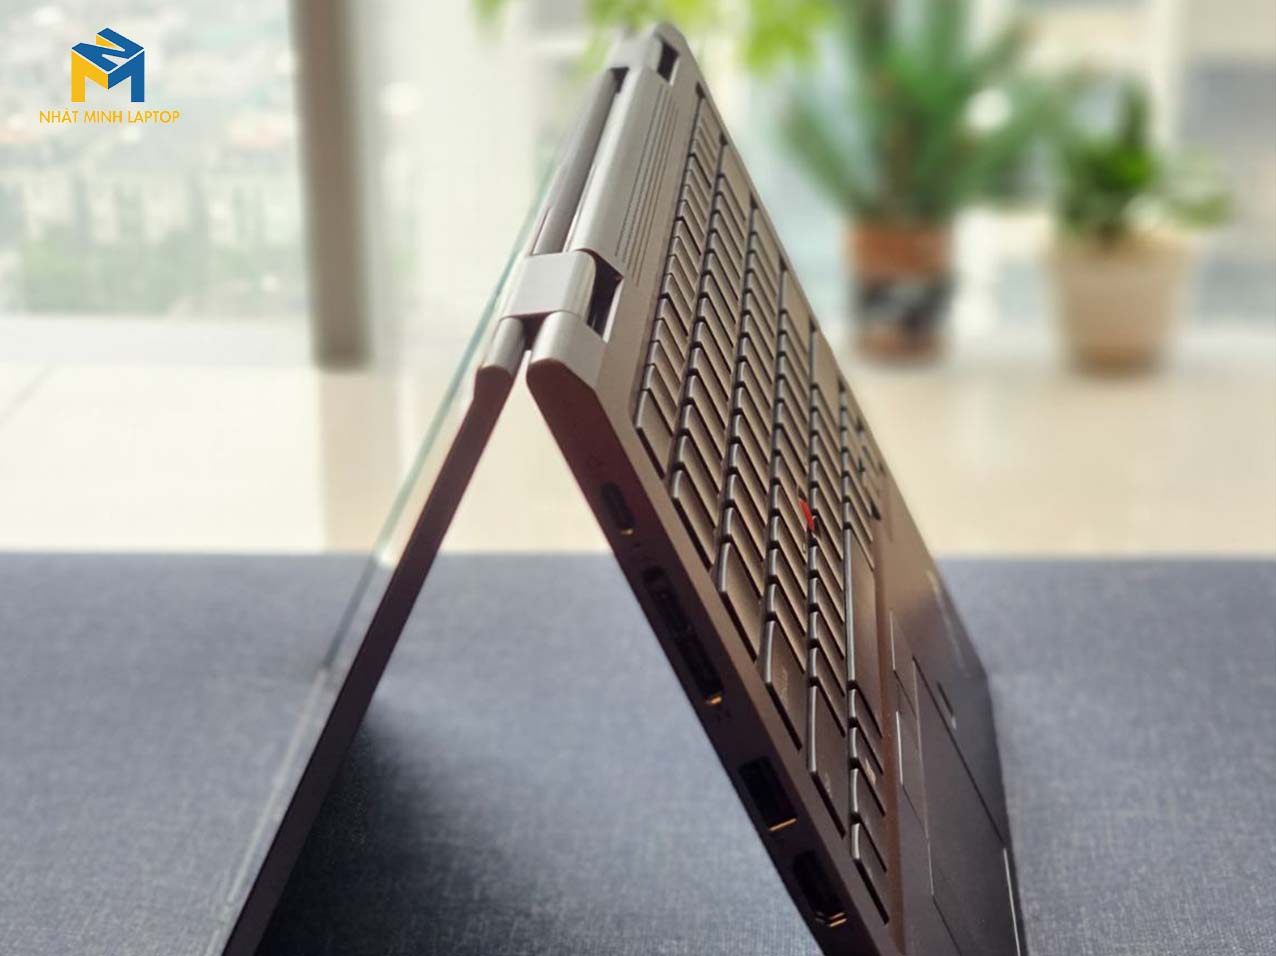 ThinkPad x1 Yoga Gen 4 